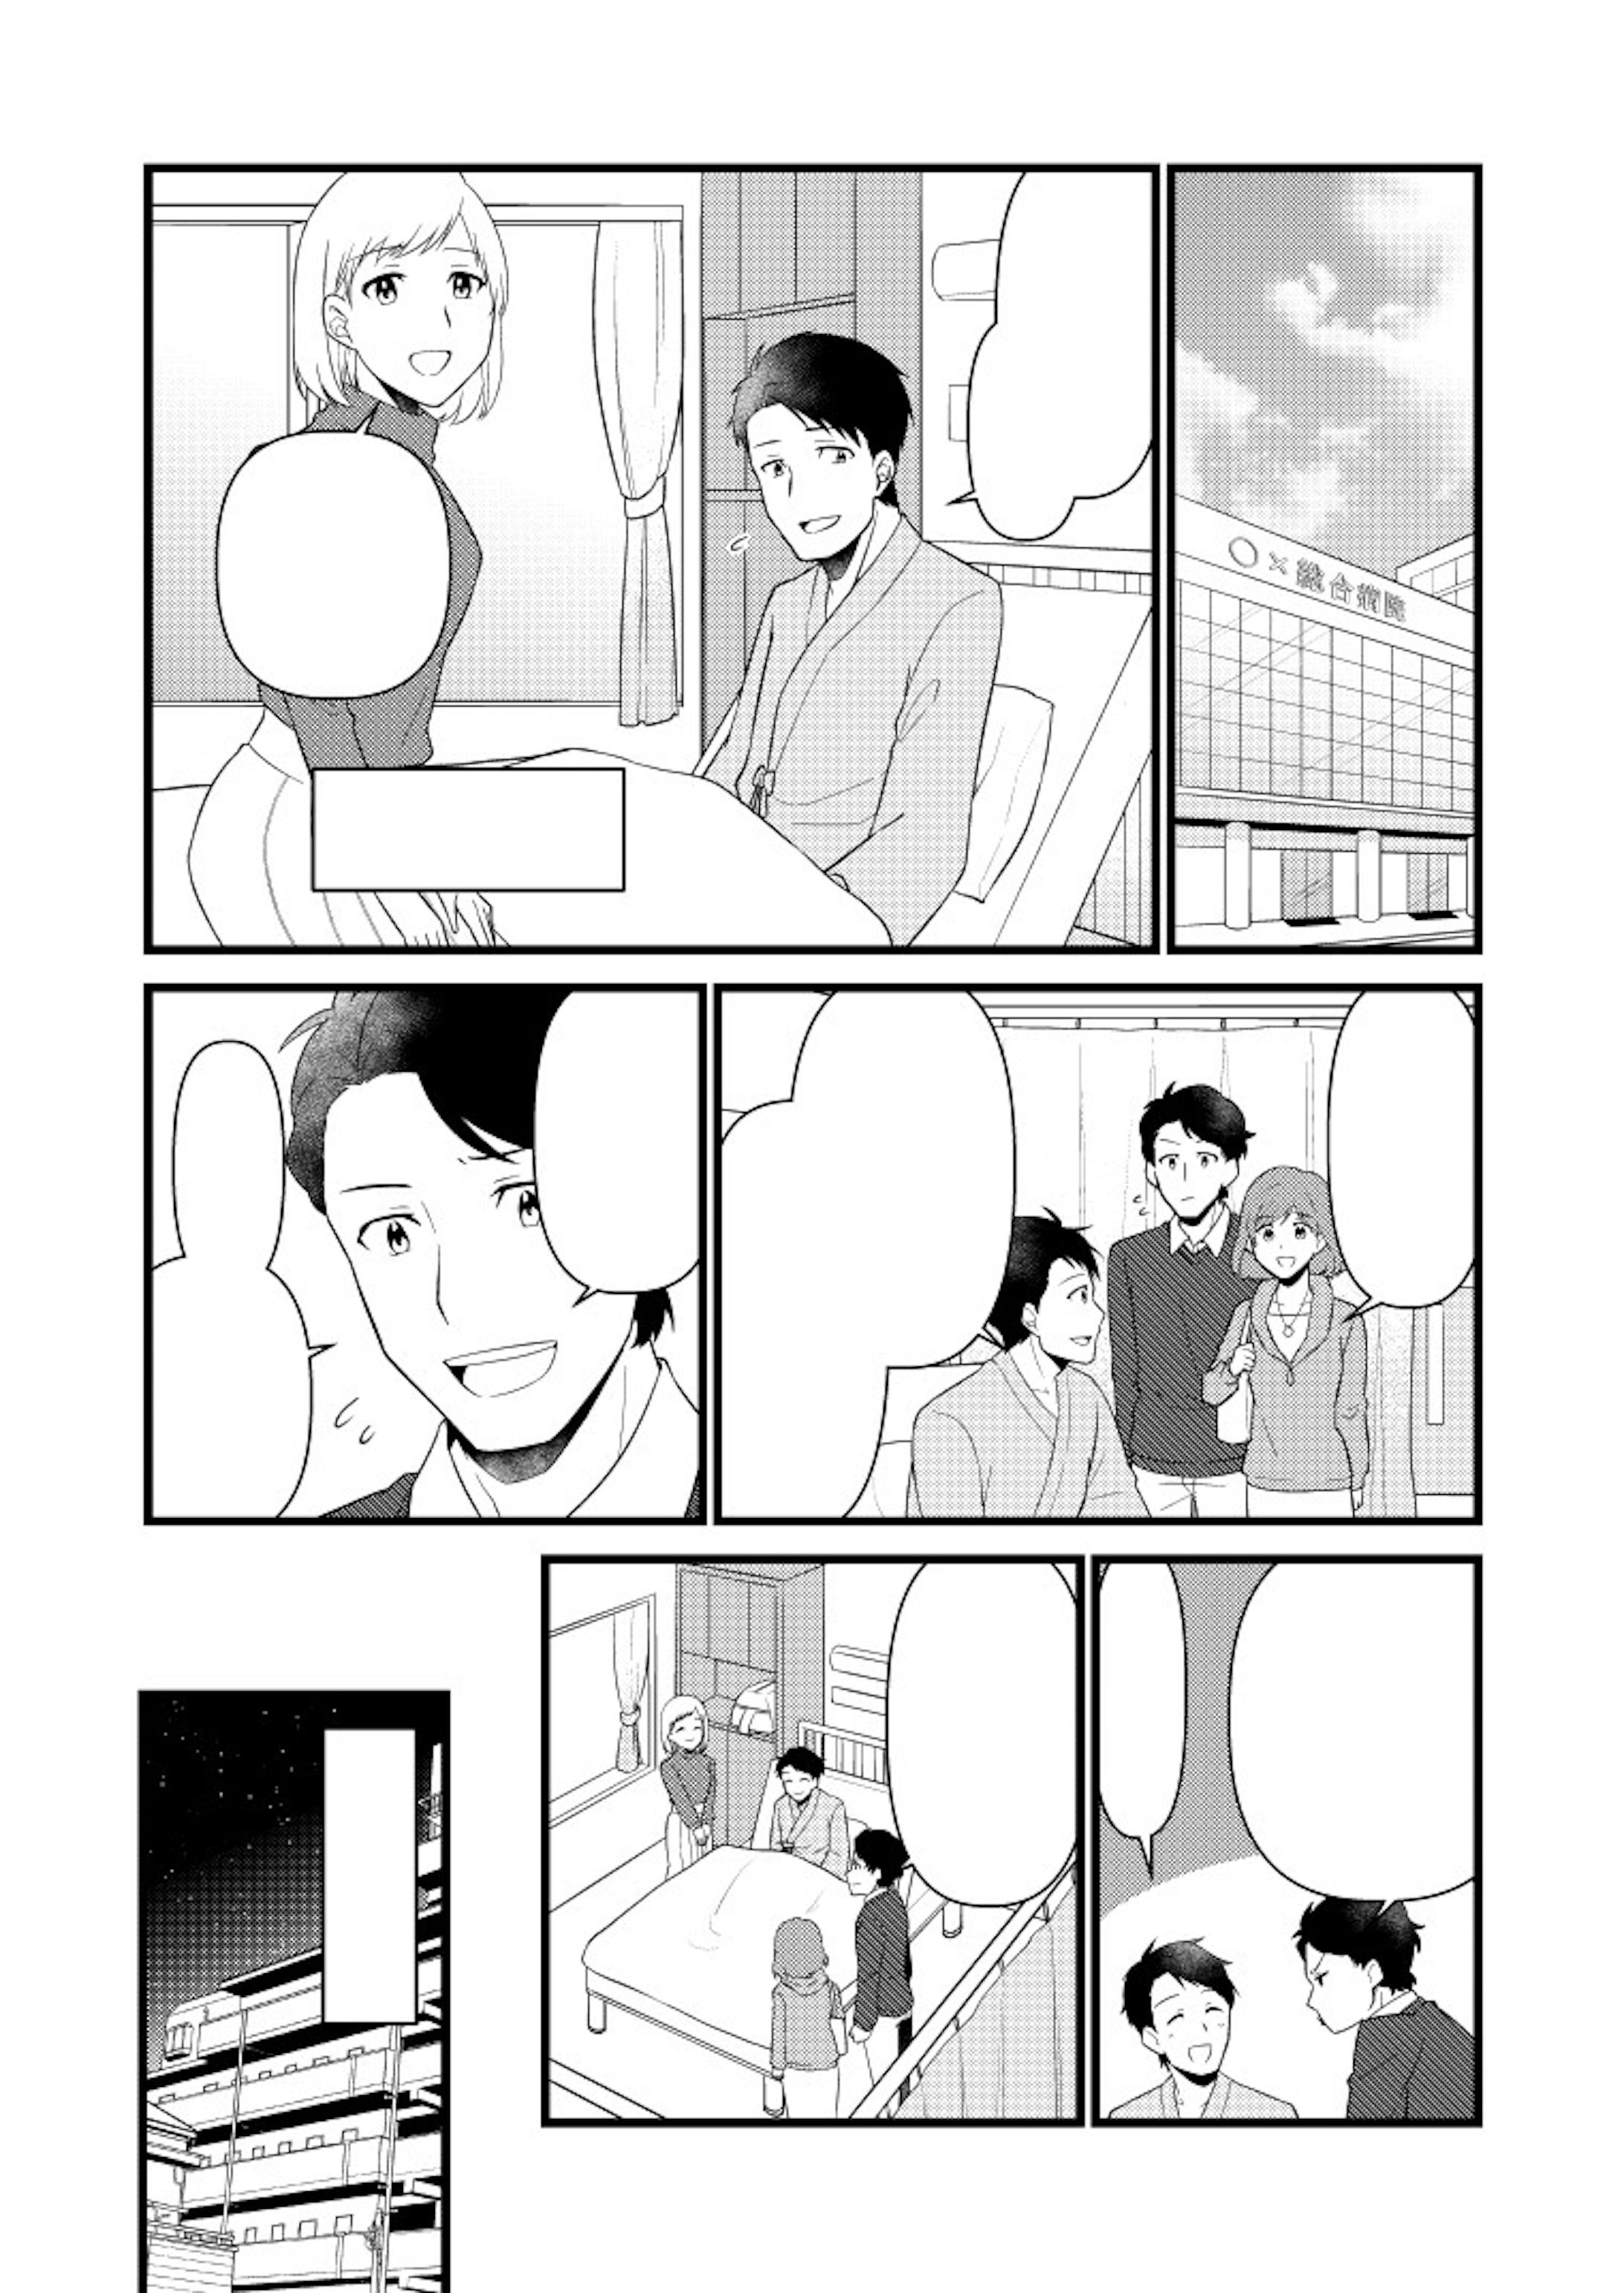 がん保険紹介冊子用漫画-2